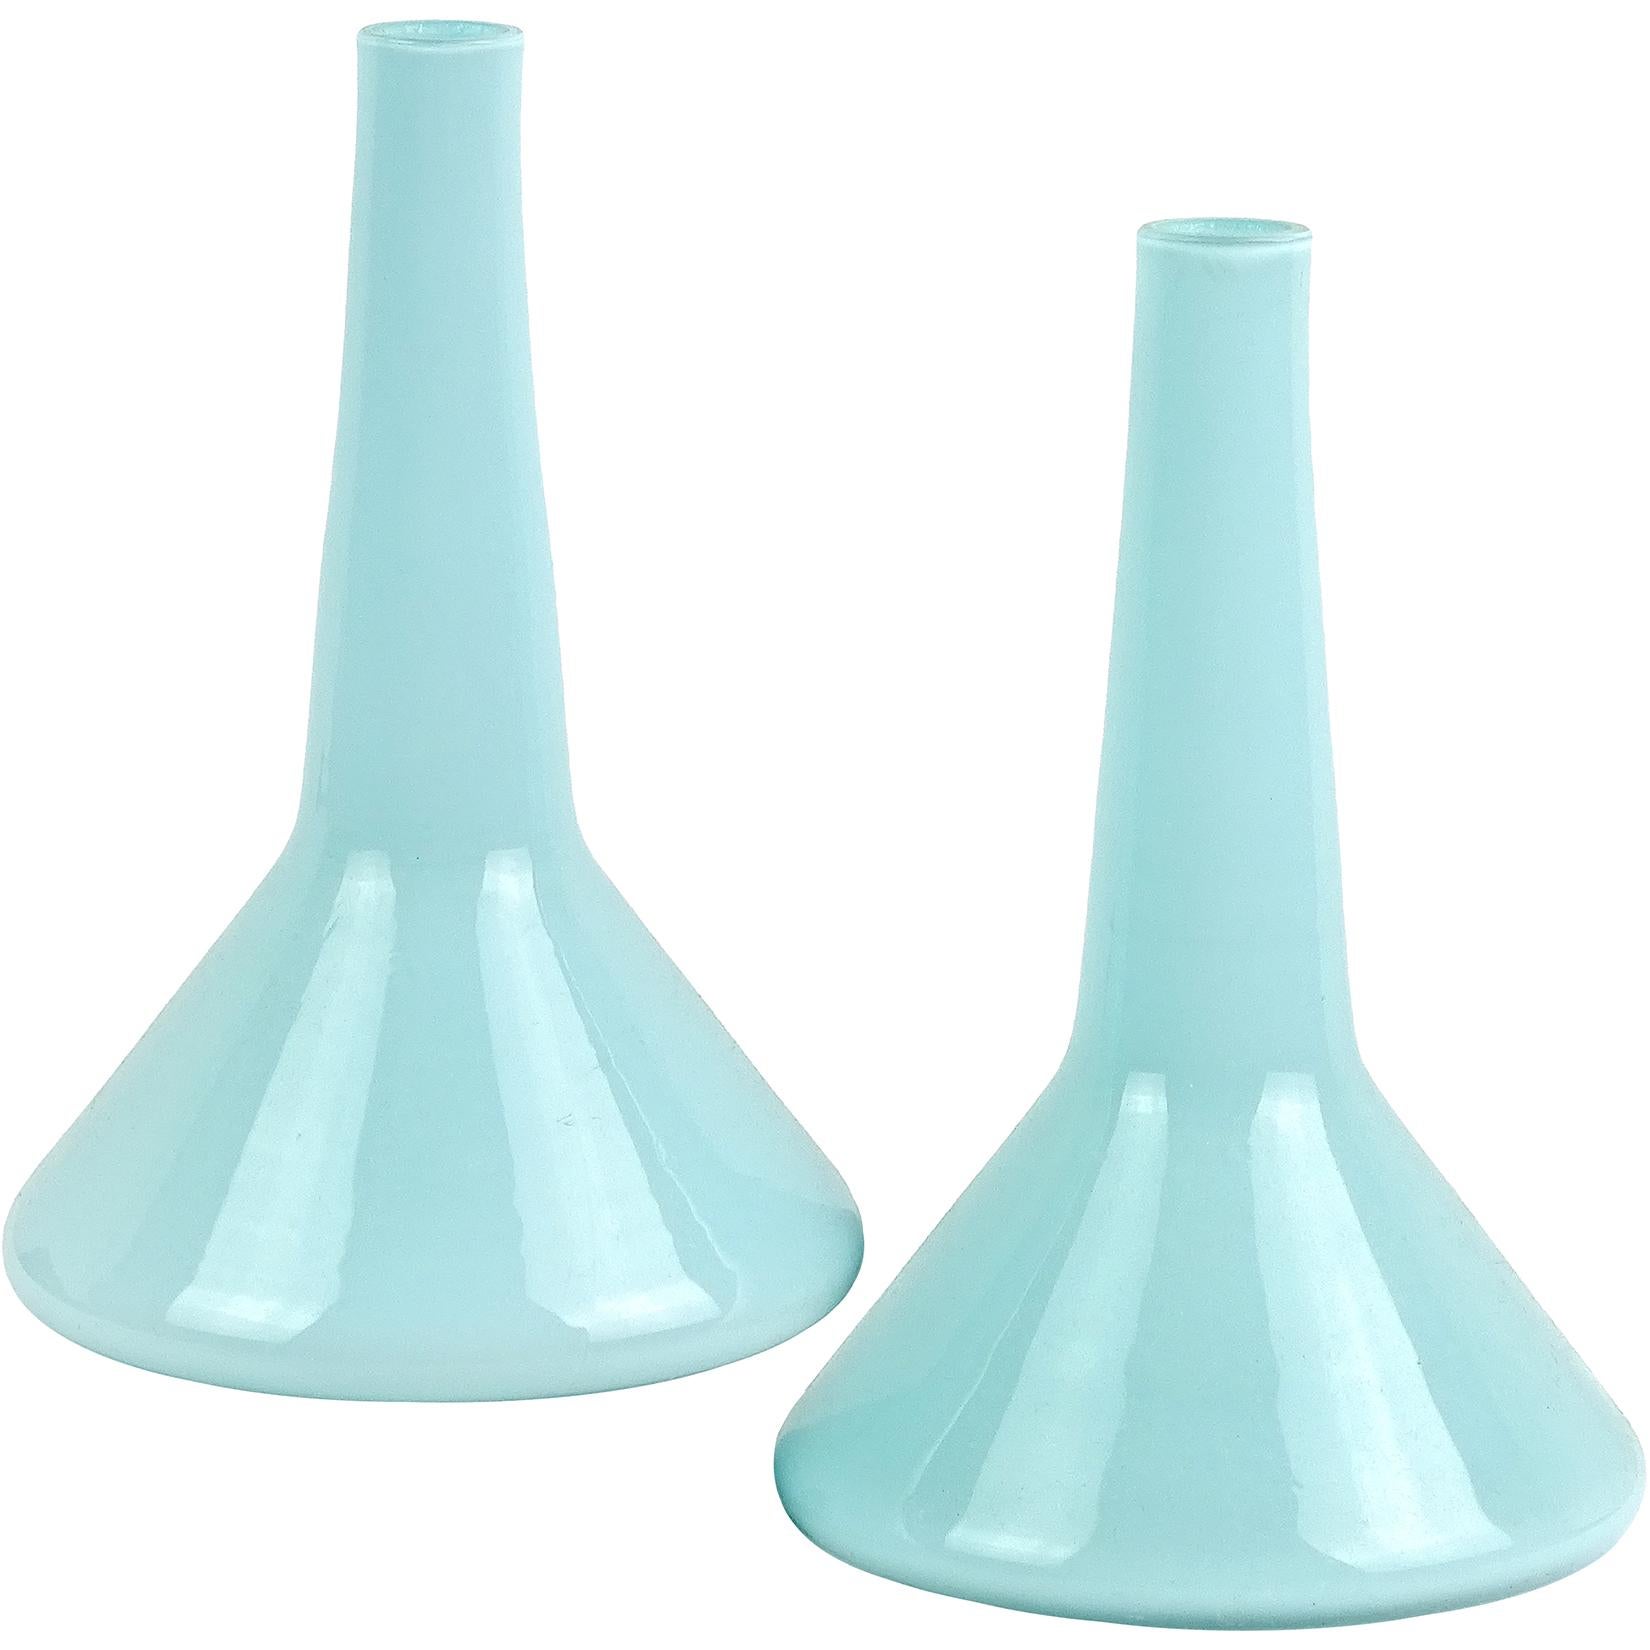 Fratelli Toso Murano Light Blue Italian Art Glass Beaker Shaped Flower Vases